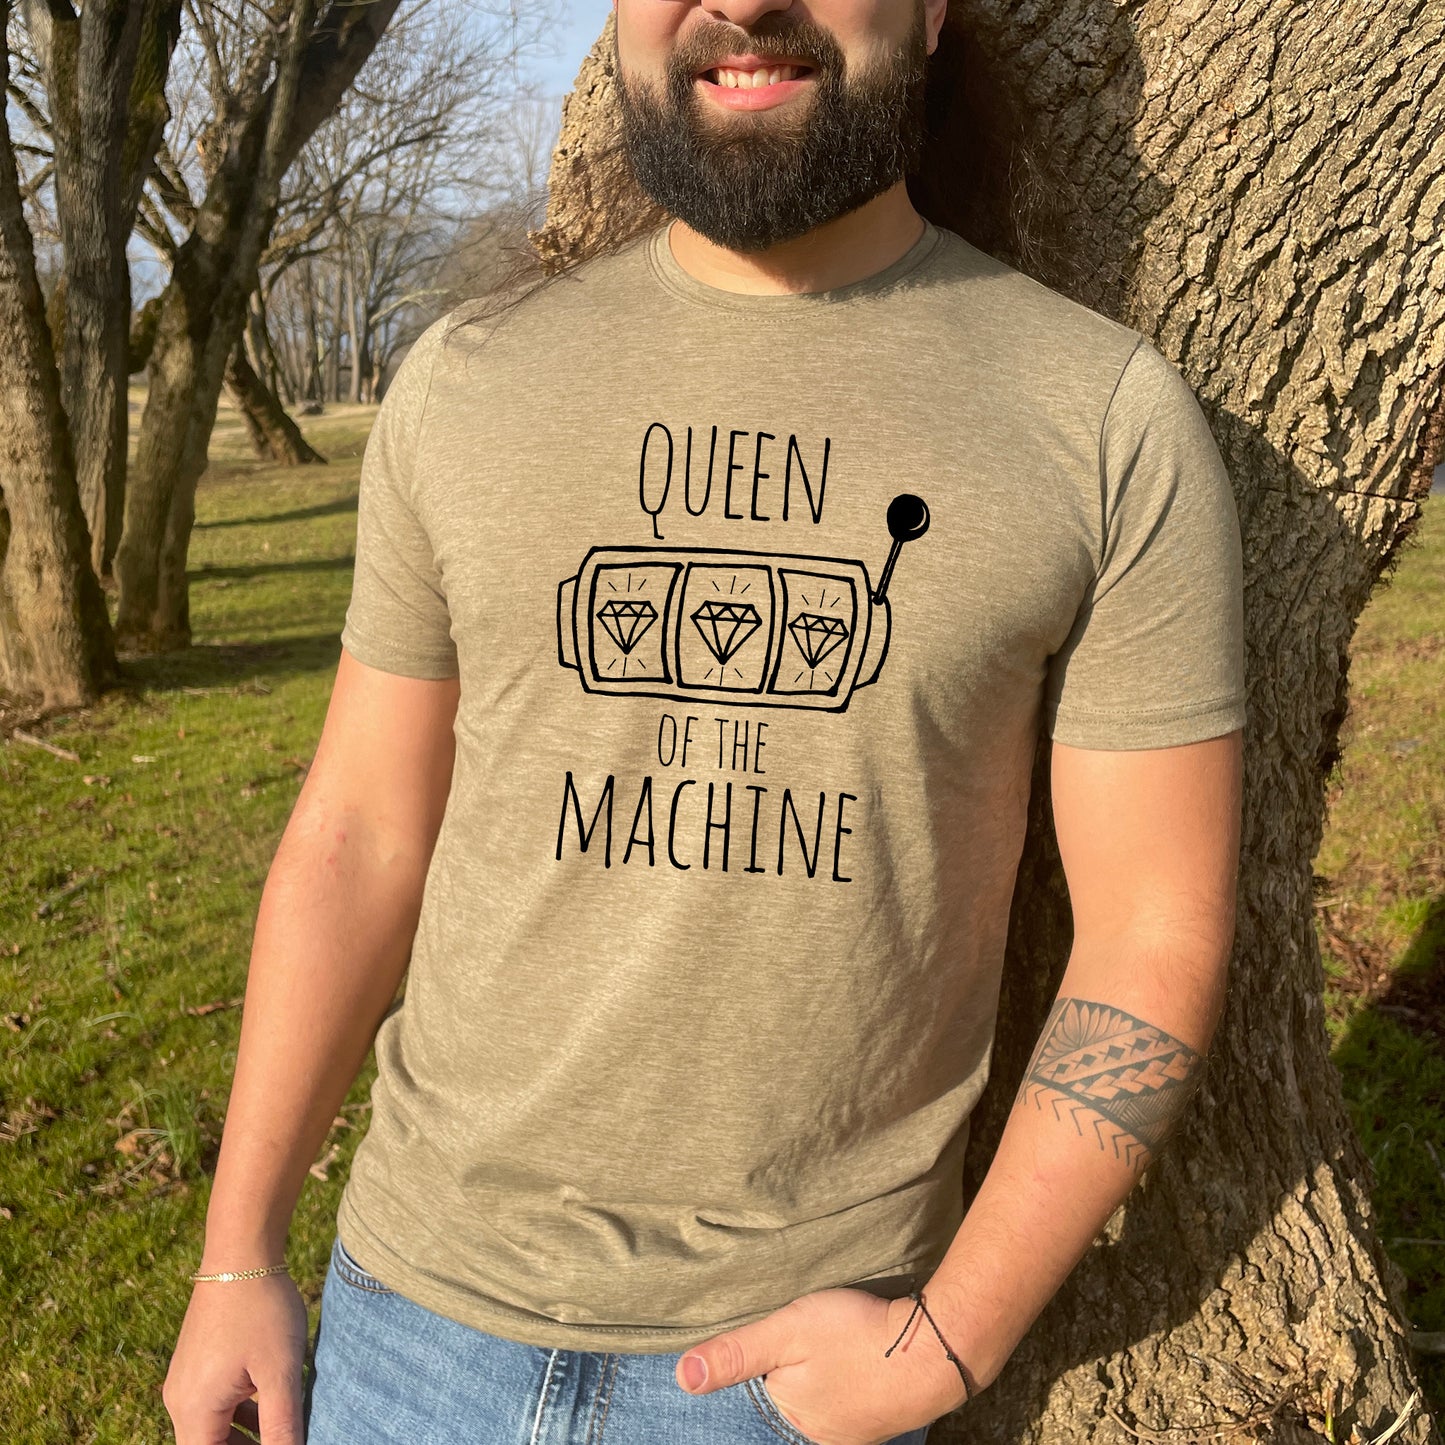 Queen of the Machine - Men's / Unisex Tee - Stonewash Blue or Sage